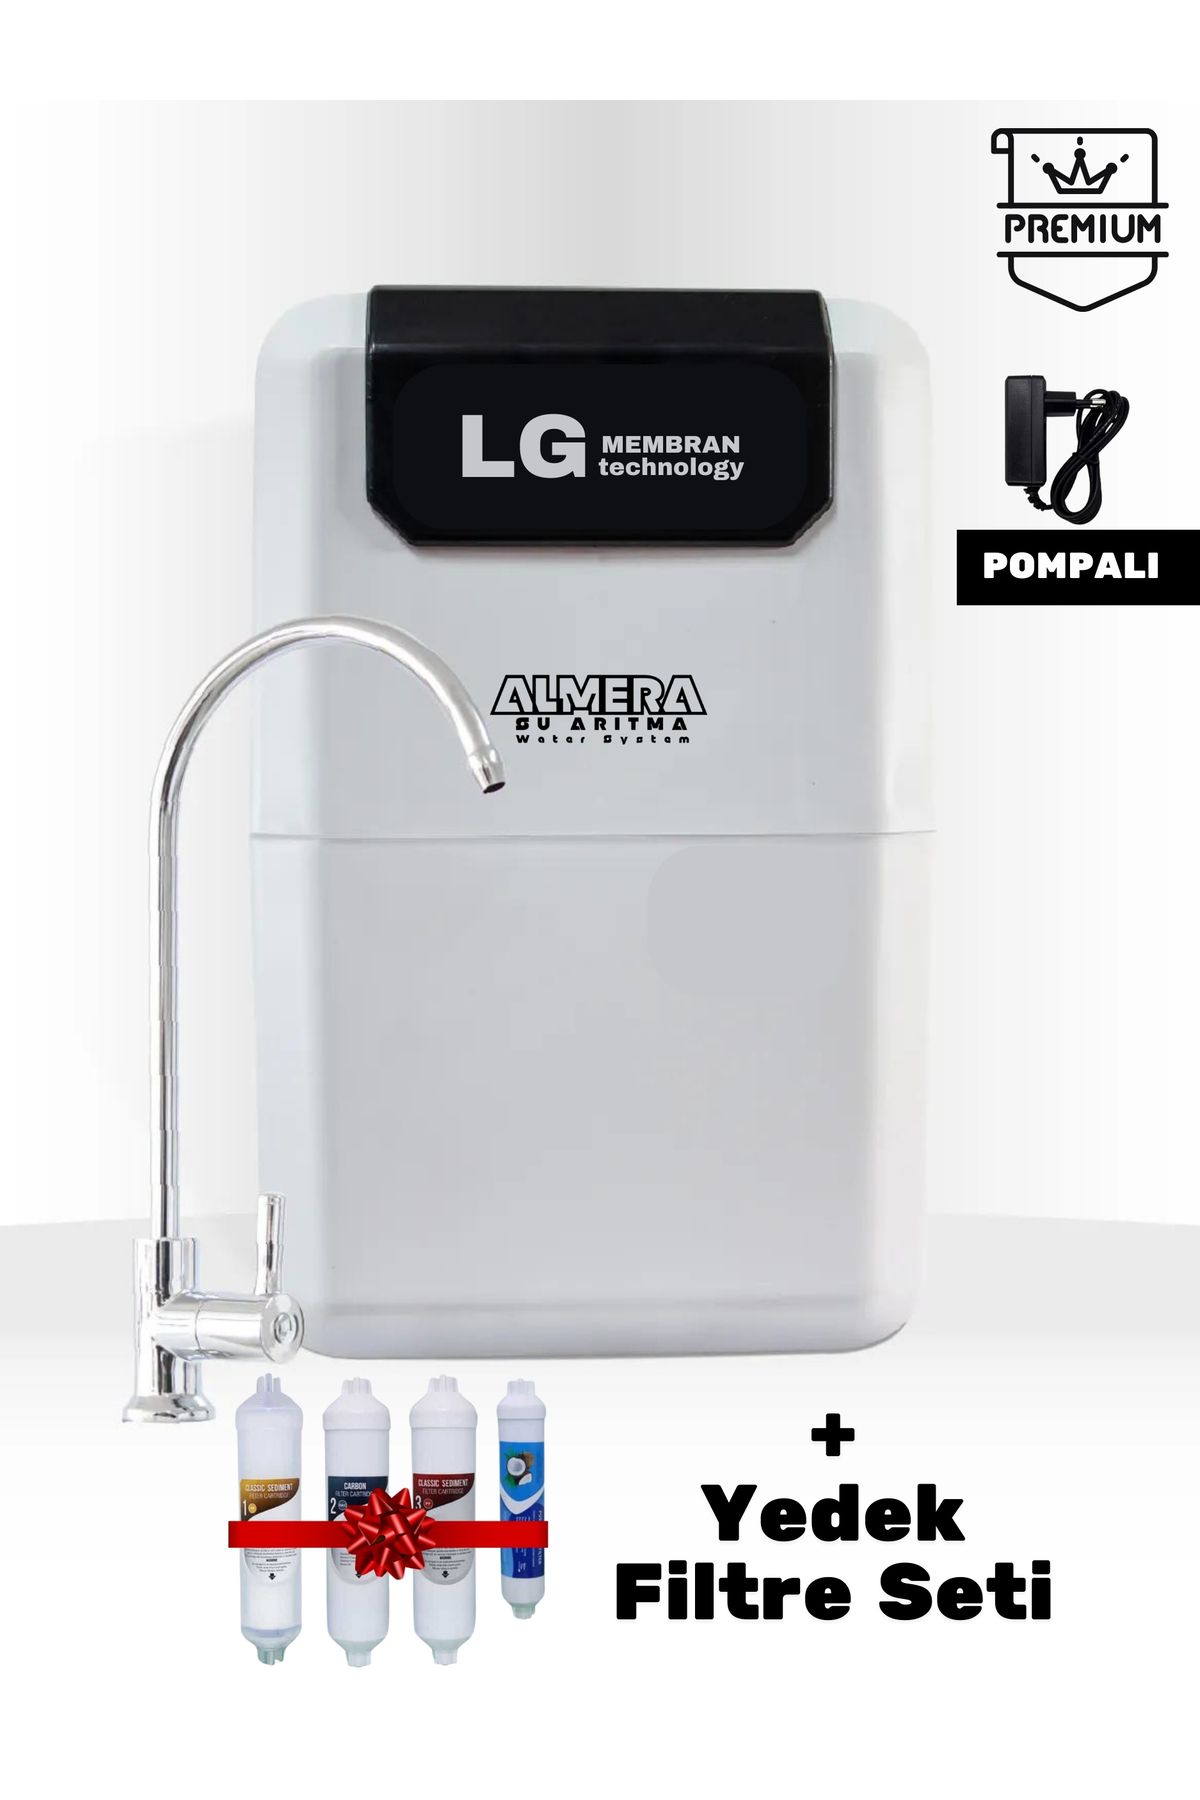 LG Chem Premium Pompalı Su Arıtma Cihazı Ekstra Mineralli Çelik Tanklı & Yedek Filtre Seti İle